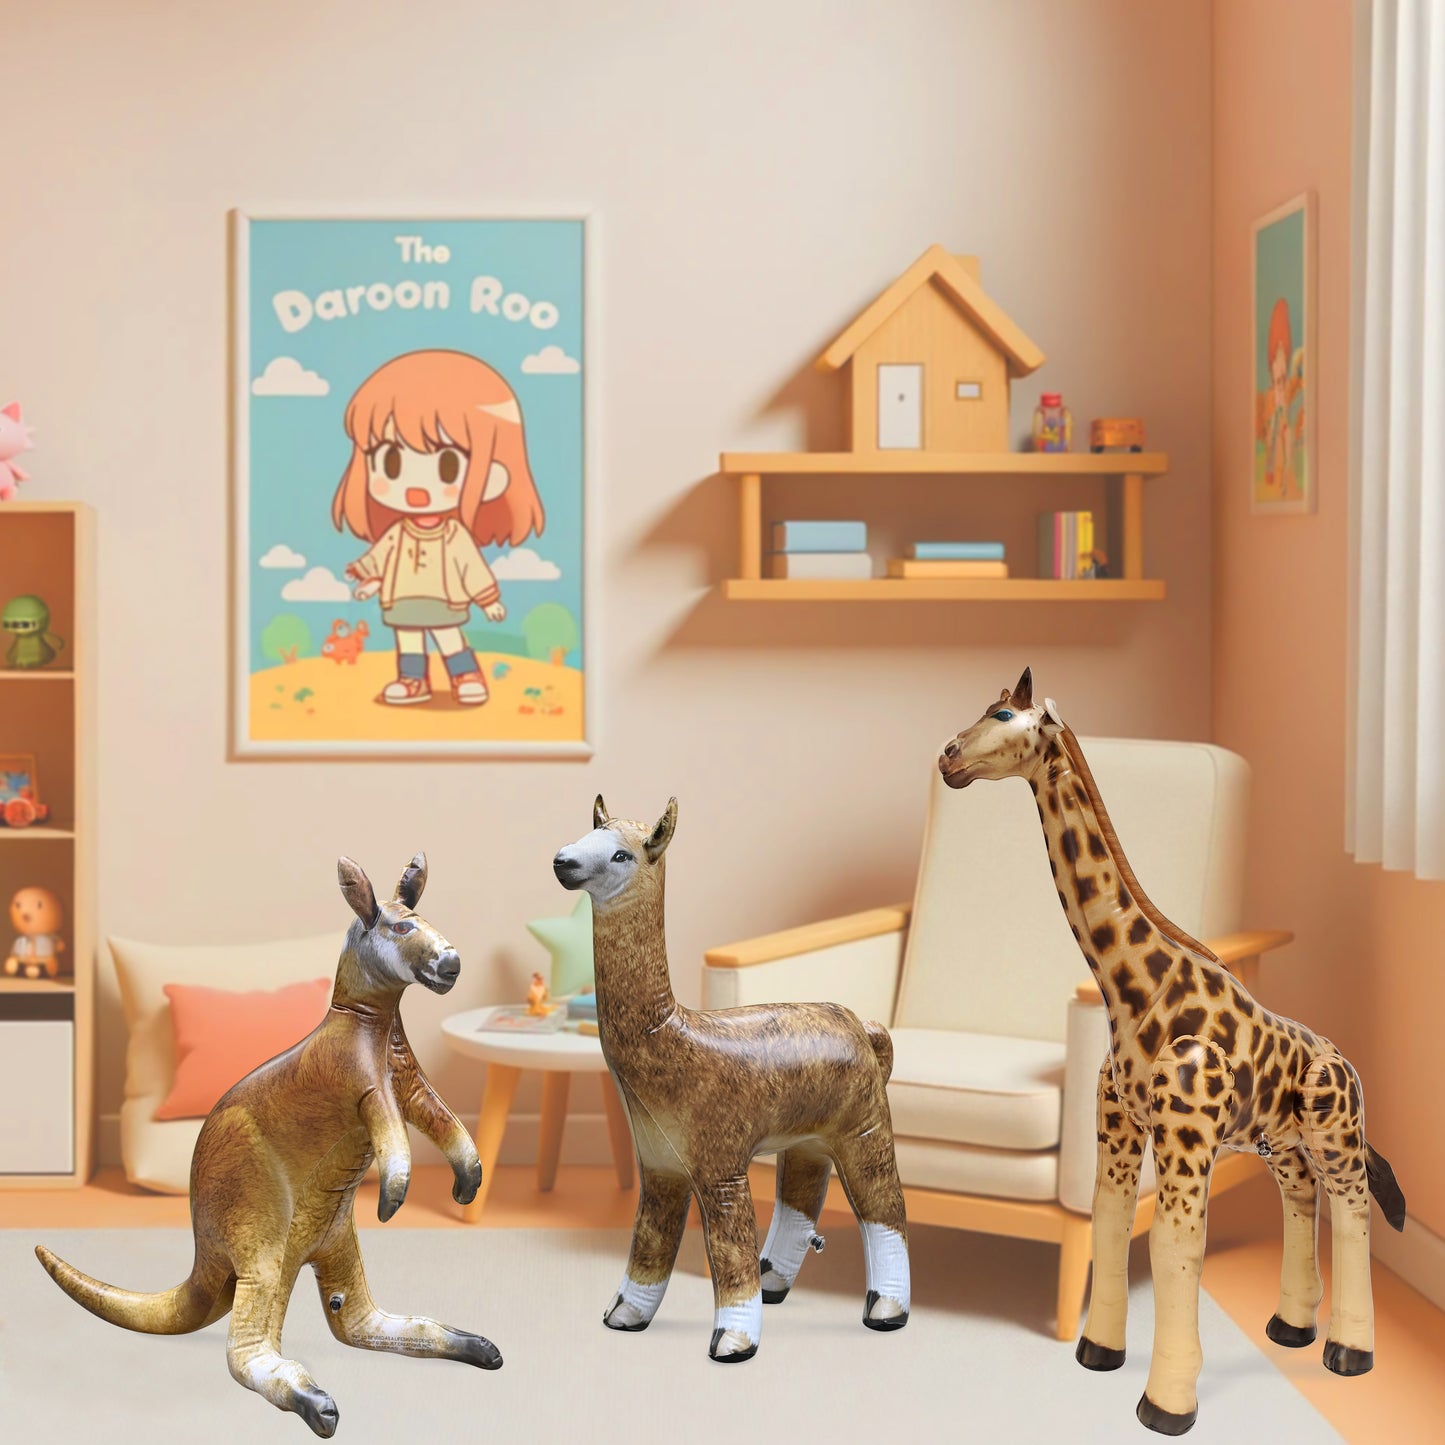 JC-KGA - Kangaroo, Giraffe, Alpaca - Decor